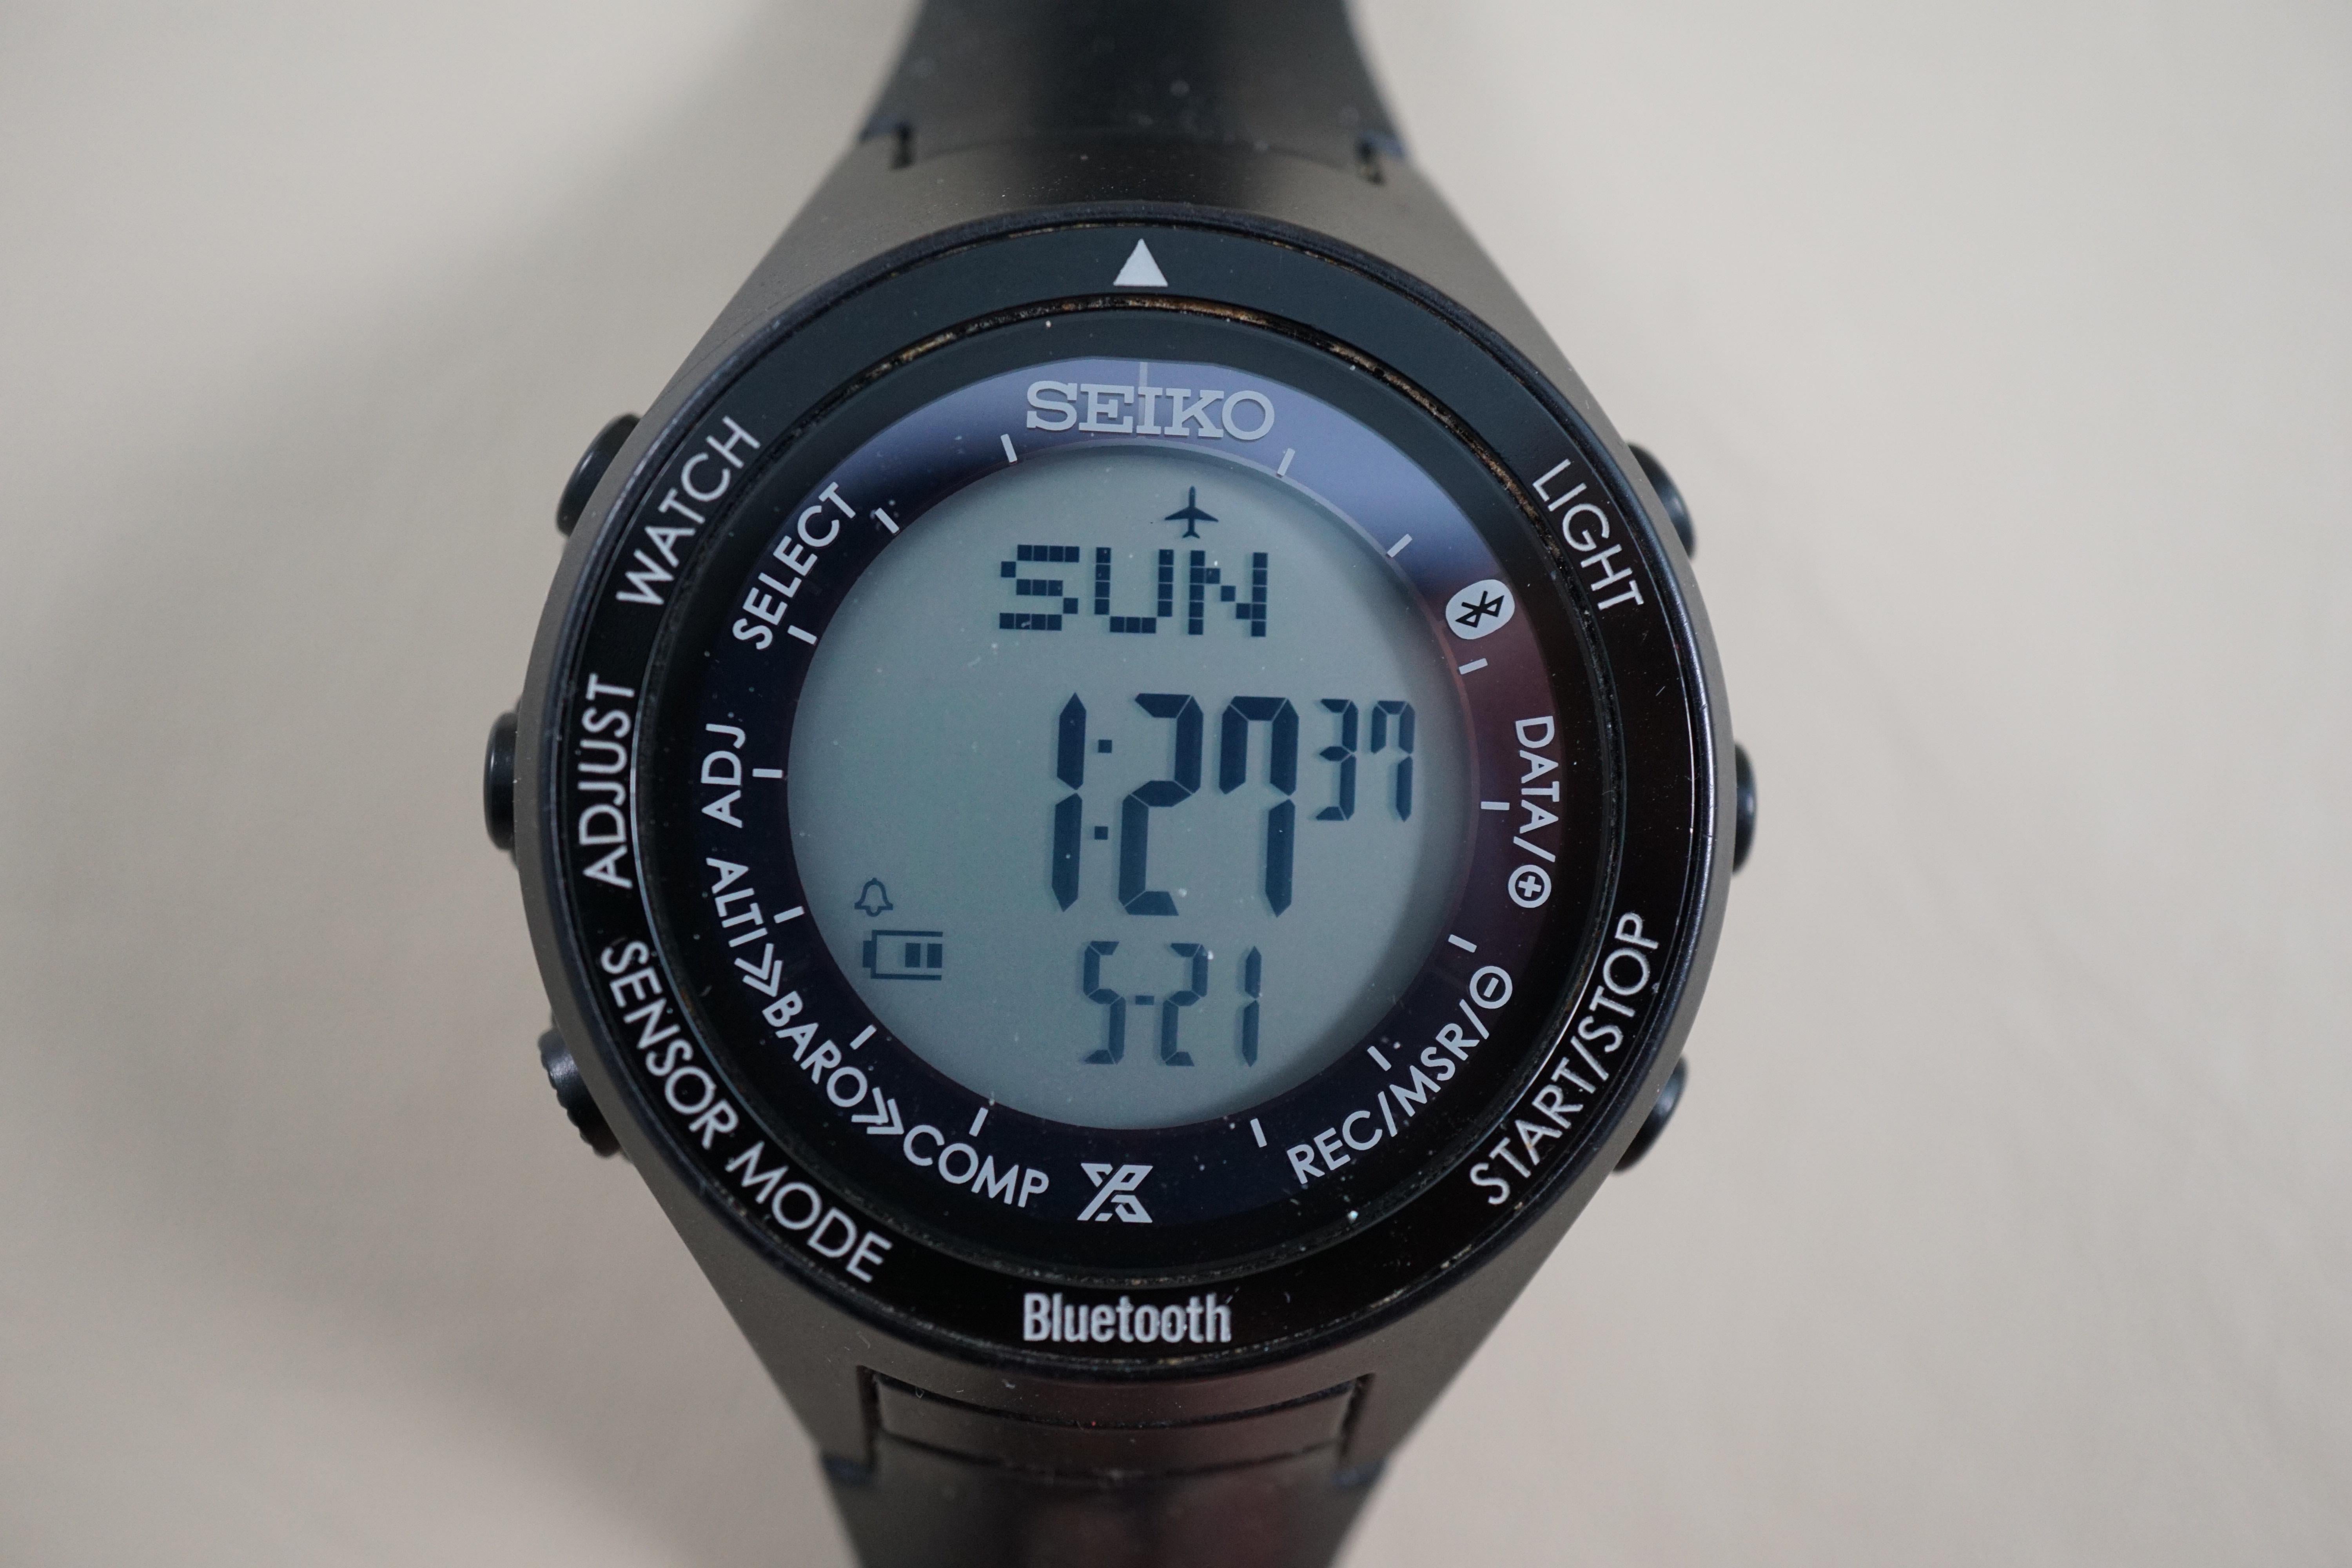 WTS] Seiko Prospex SBEK001 S810 JDM Bluetooth Digital Watch - $150